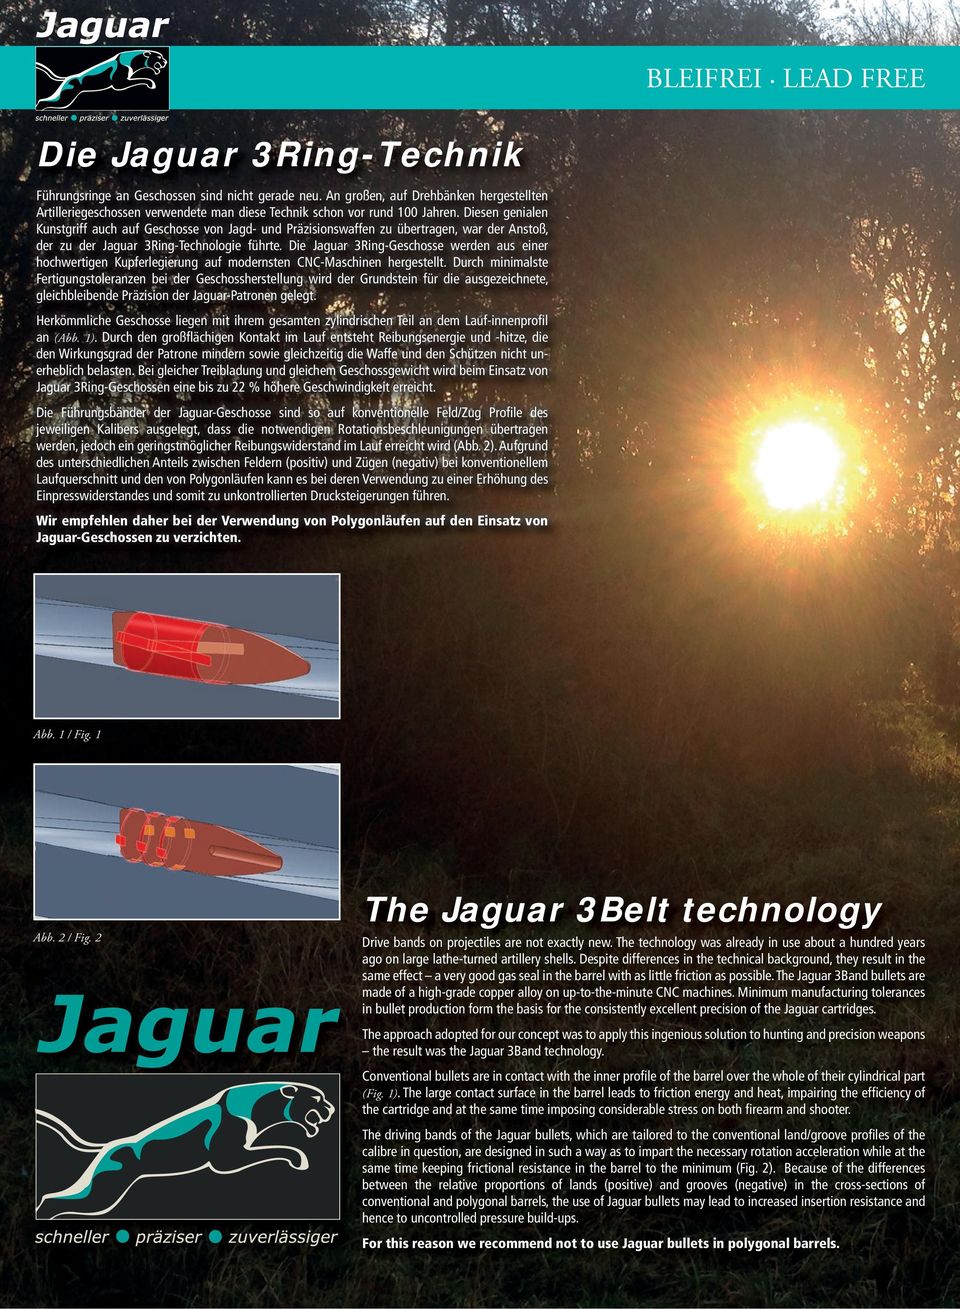 Diesen genialen Kunstgriff auch auf Geschosse von Jagd- und Präzisionswaffen zu übertragen, war der Anstoß, der zu der Jaguar 3Ring-Technologie führte.